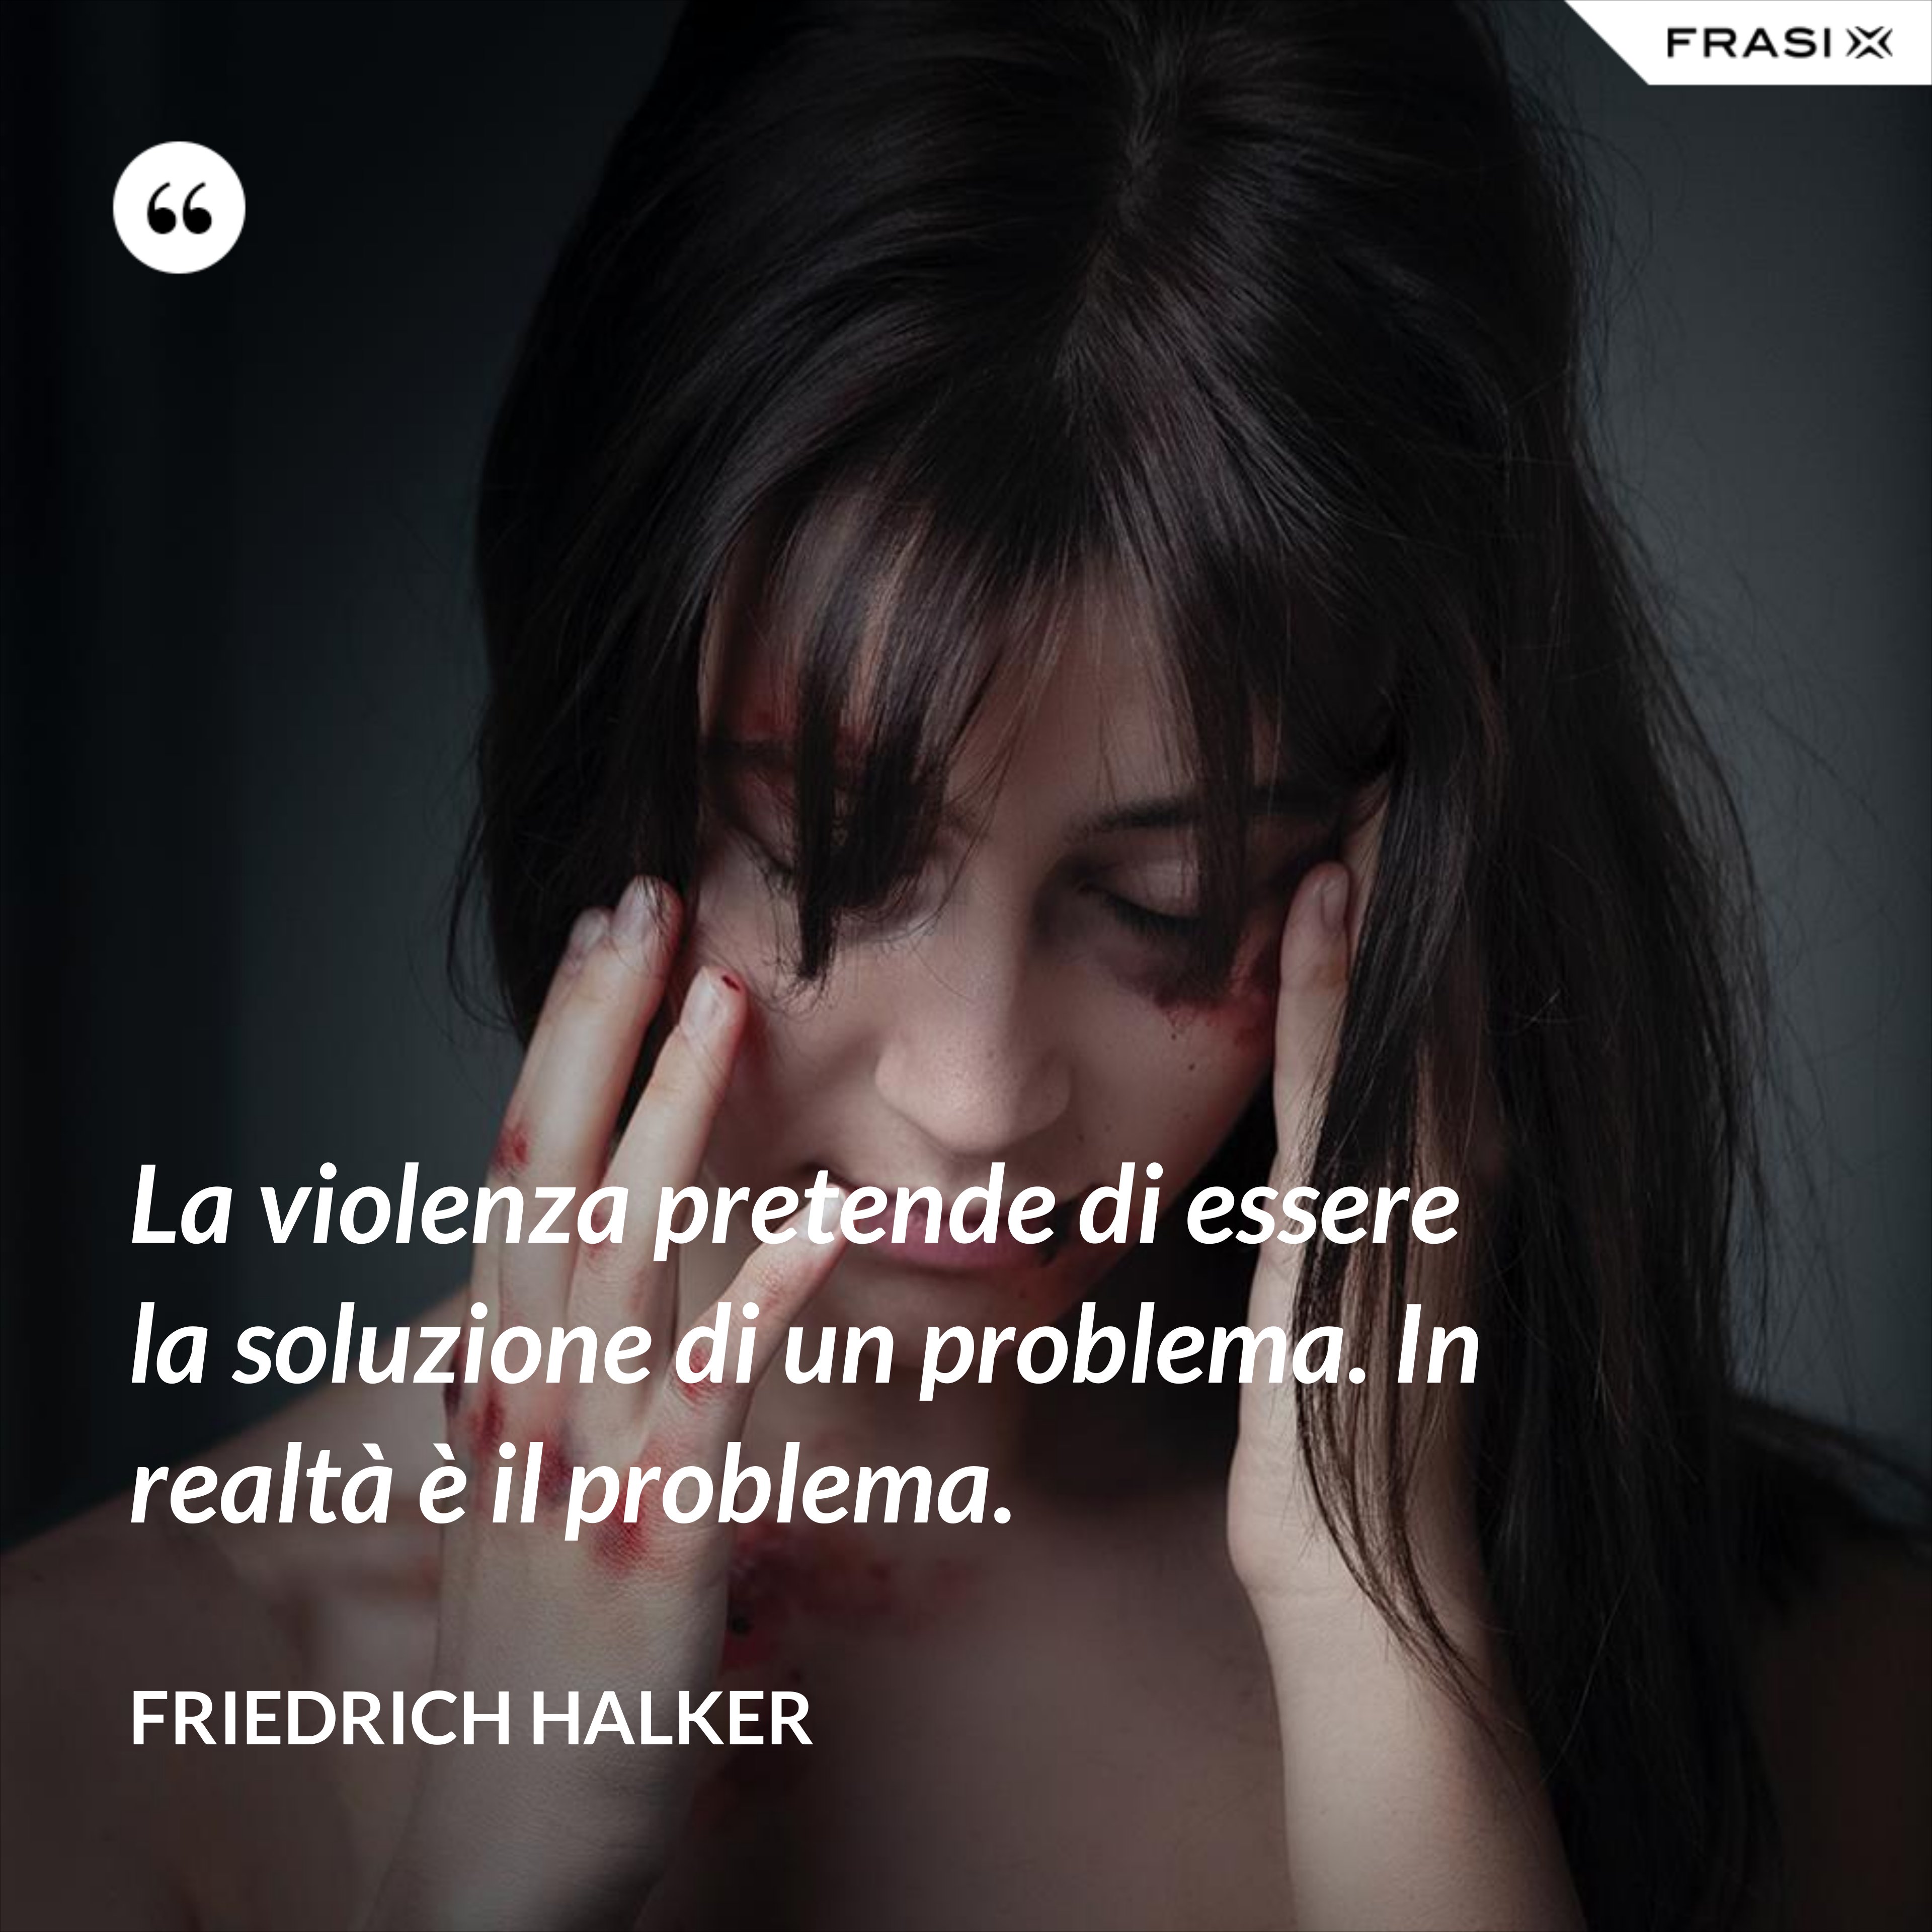 La violenza pretende di essere la soluzione di un problema. In realtà è il problema. - Friedrich Halker